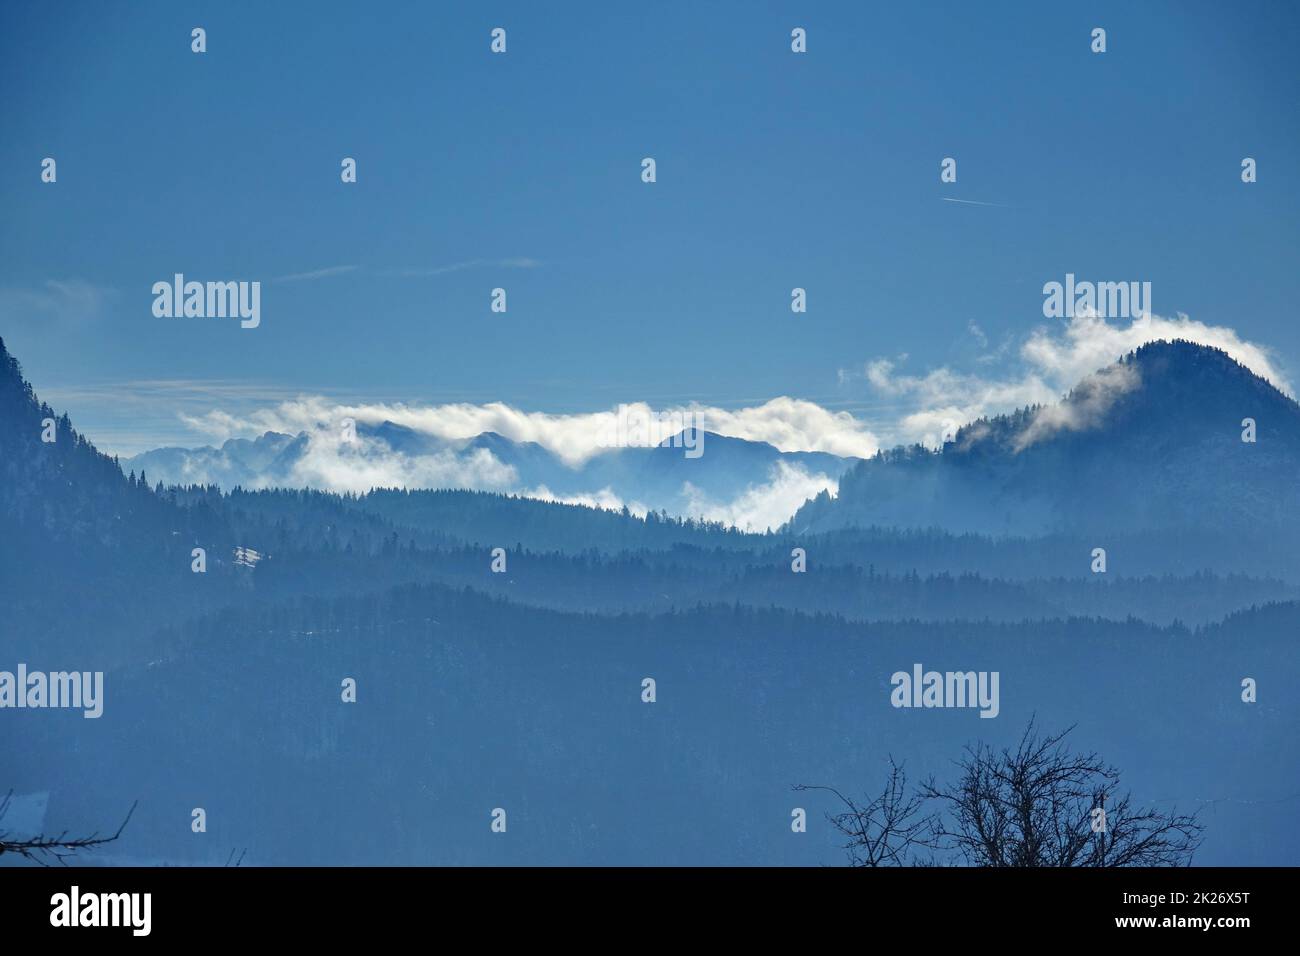 Germany, Bavaria, Upper Bavaria, mangfall mountains, Hiking paradise, landscape Stock Photo